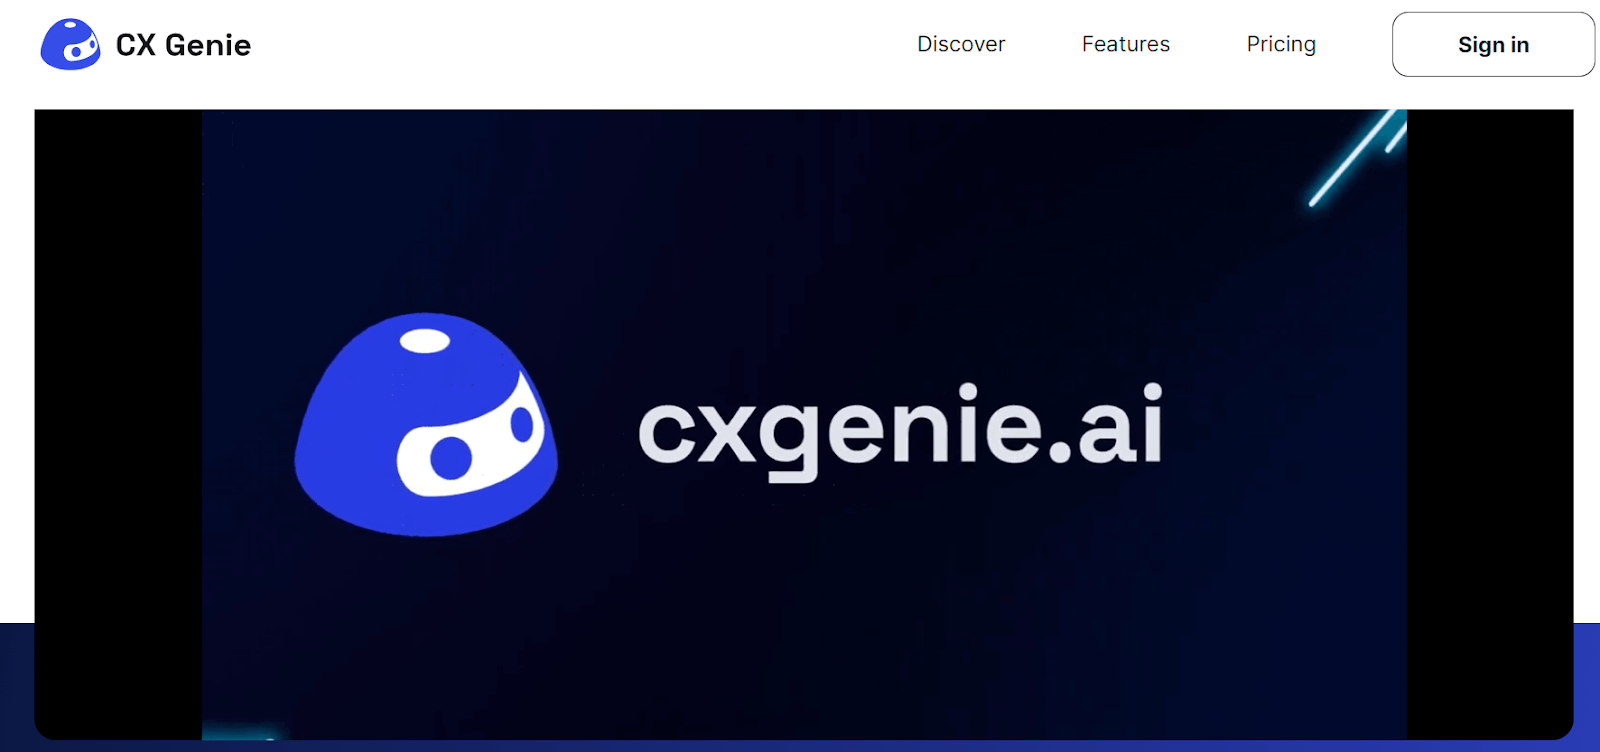 CX Genie website